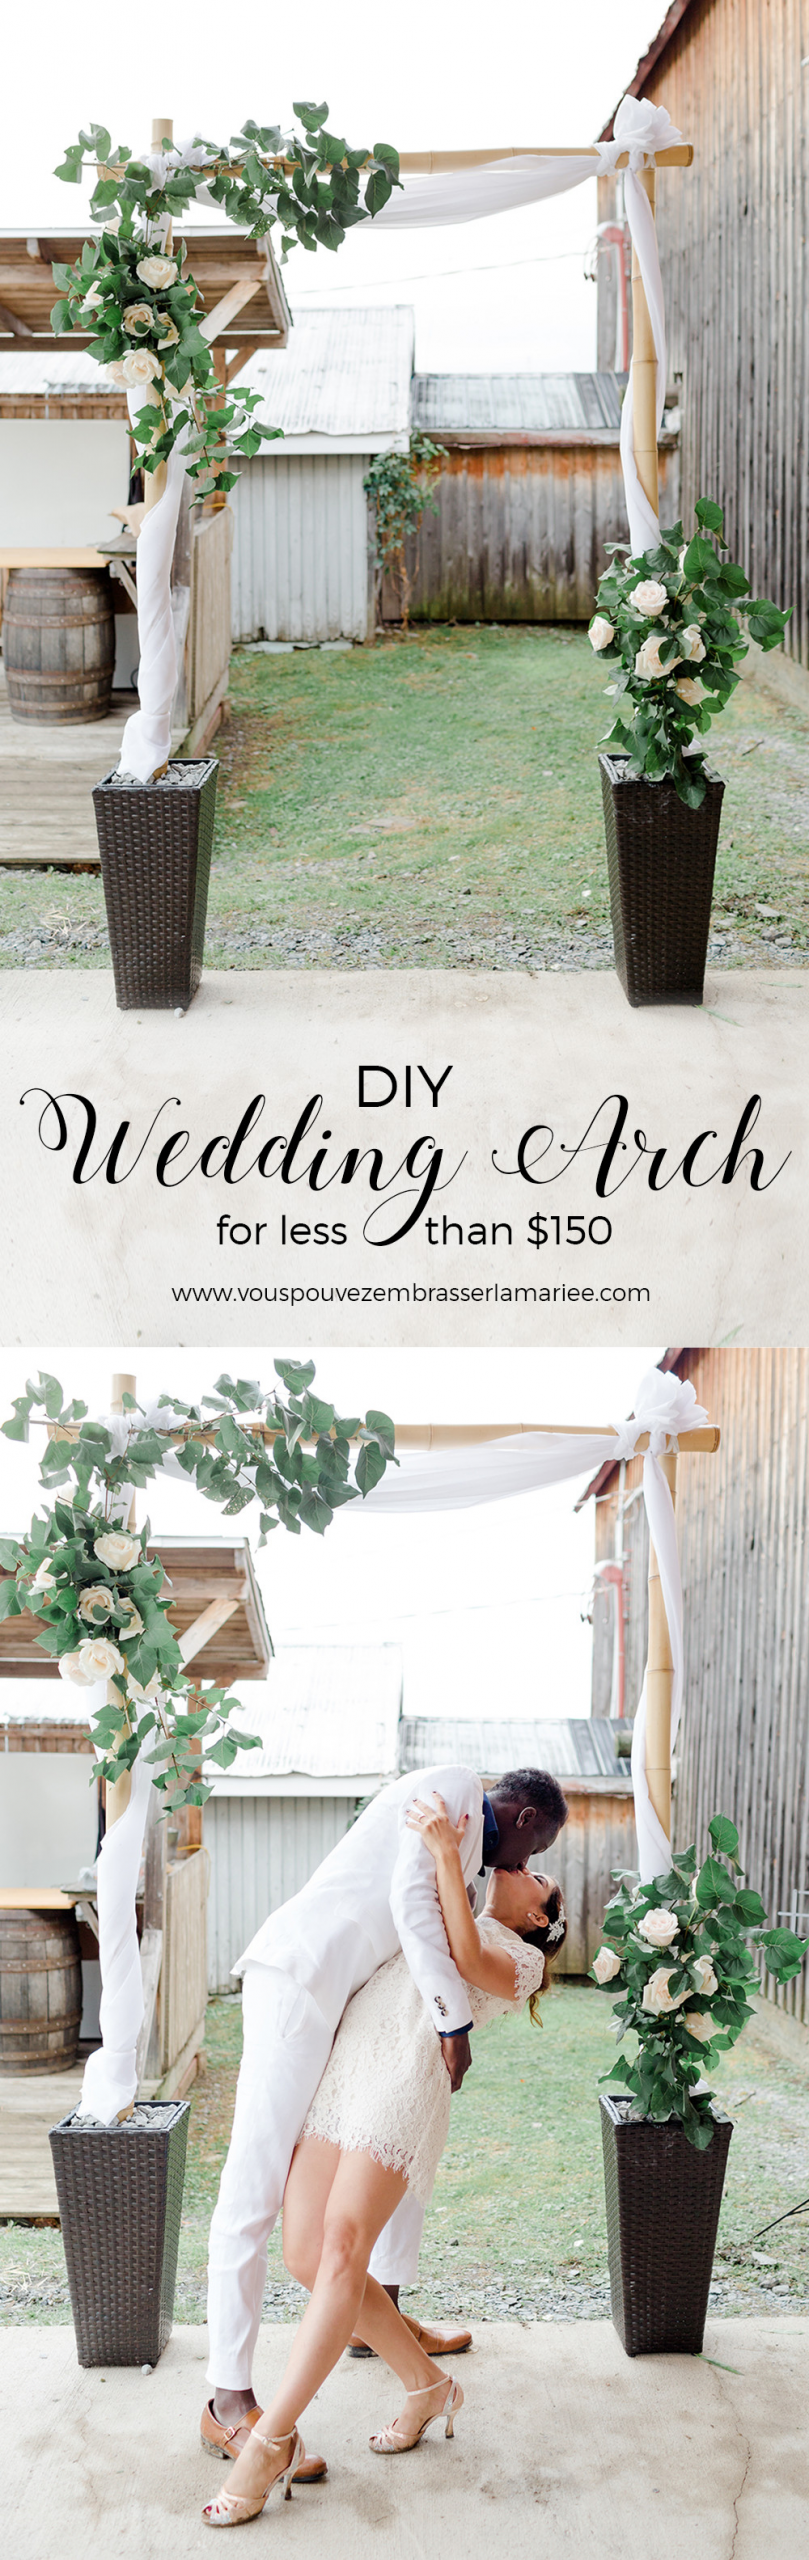 DIY Wedding Arch Tutorial
 Wow A DIY bamboo wedding arch for less than $150 tutorial